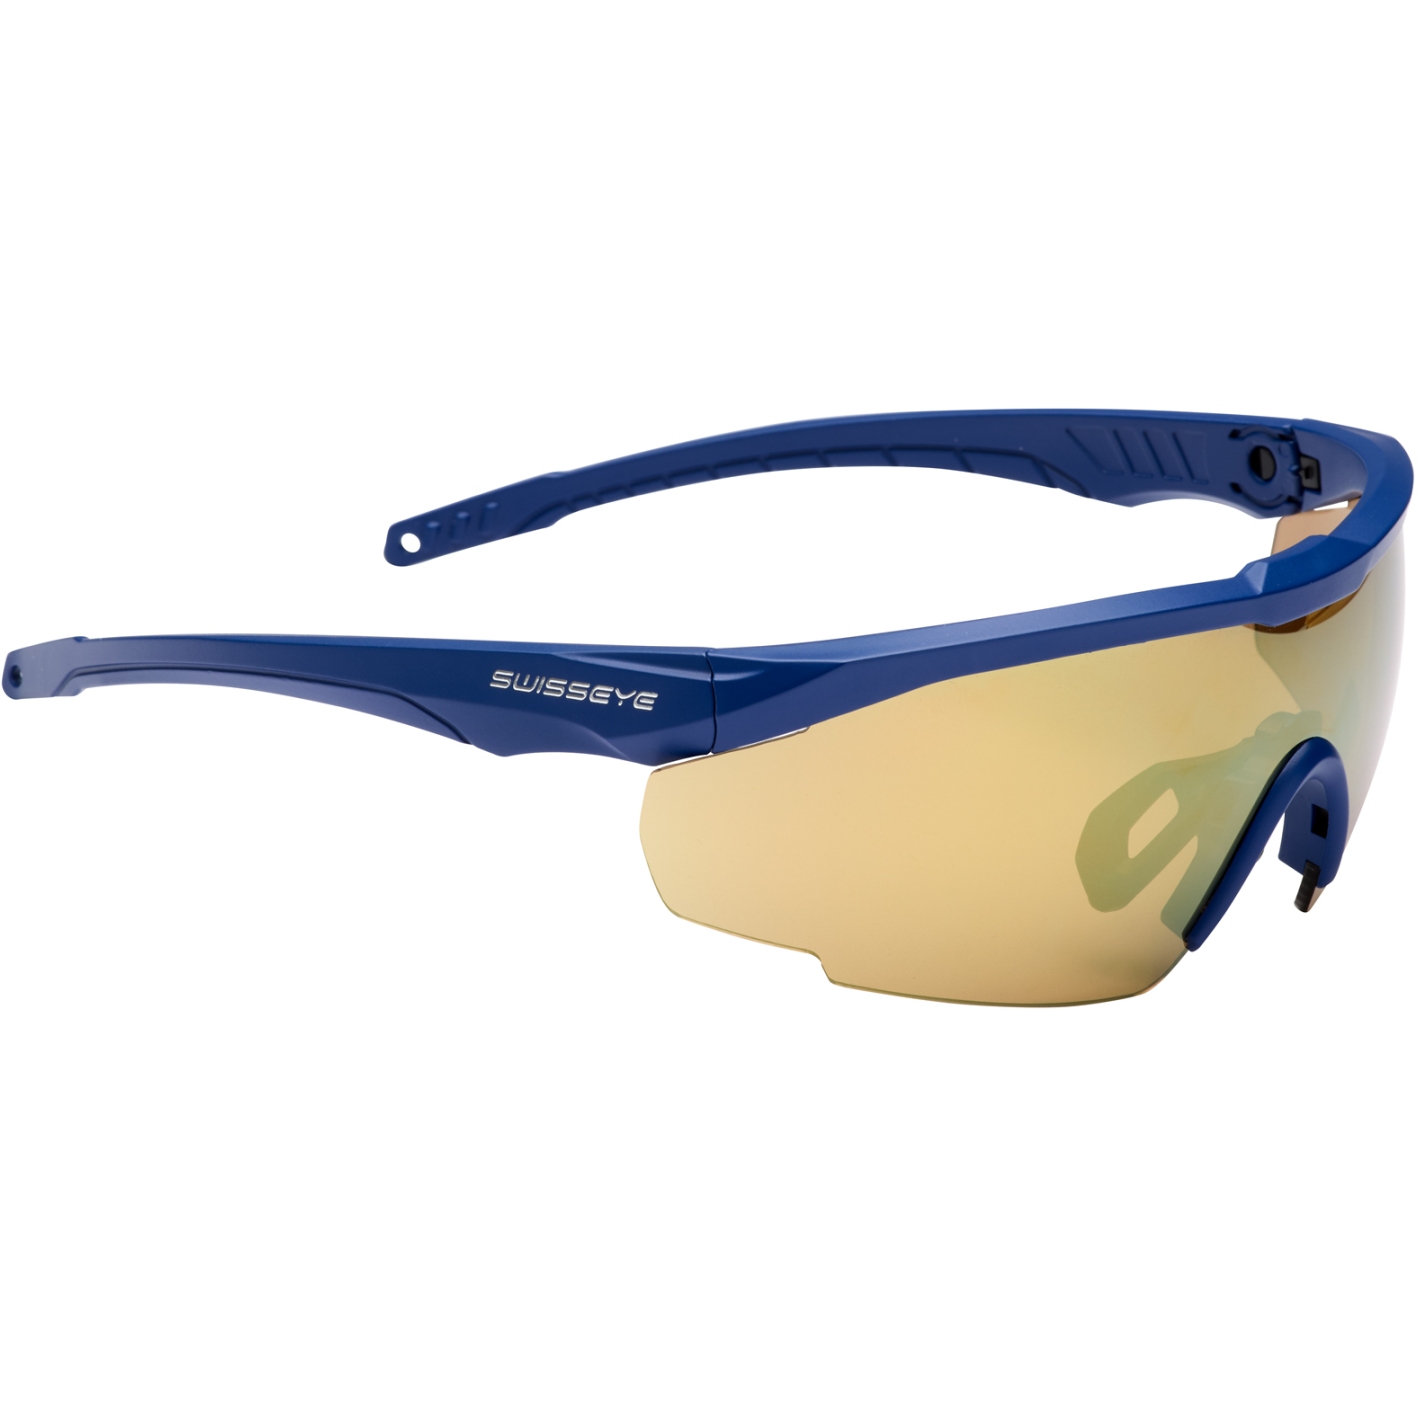 Produktbild von Swiss Eye Blackhawk Sports RX Brille - Dark Blue Matt - Brown Gold Revo + Orange + Clear 14642RX